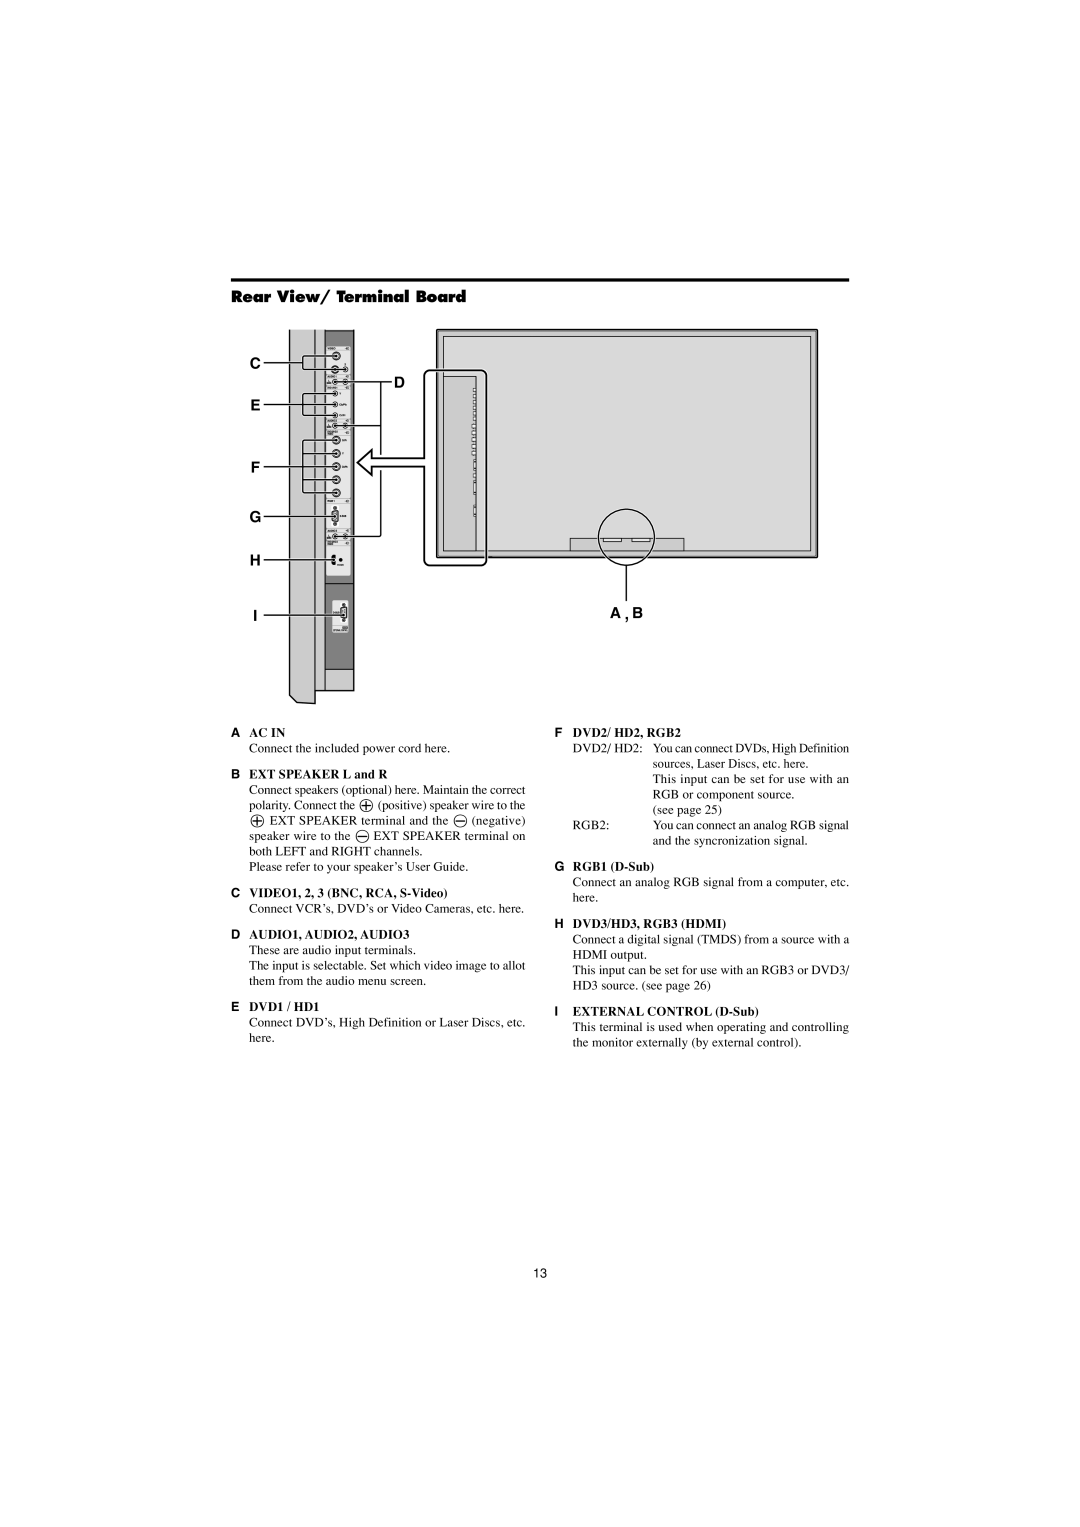 Marantz PD6150D Rear View/ Terminal Board, A Ac In, F DVD2/ HD2, RGB2, B EXT SPEAKER L and R, G RGB1 D-Sub, E DVD1 / HD1 